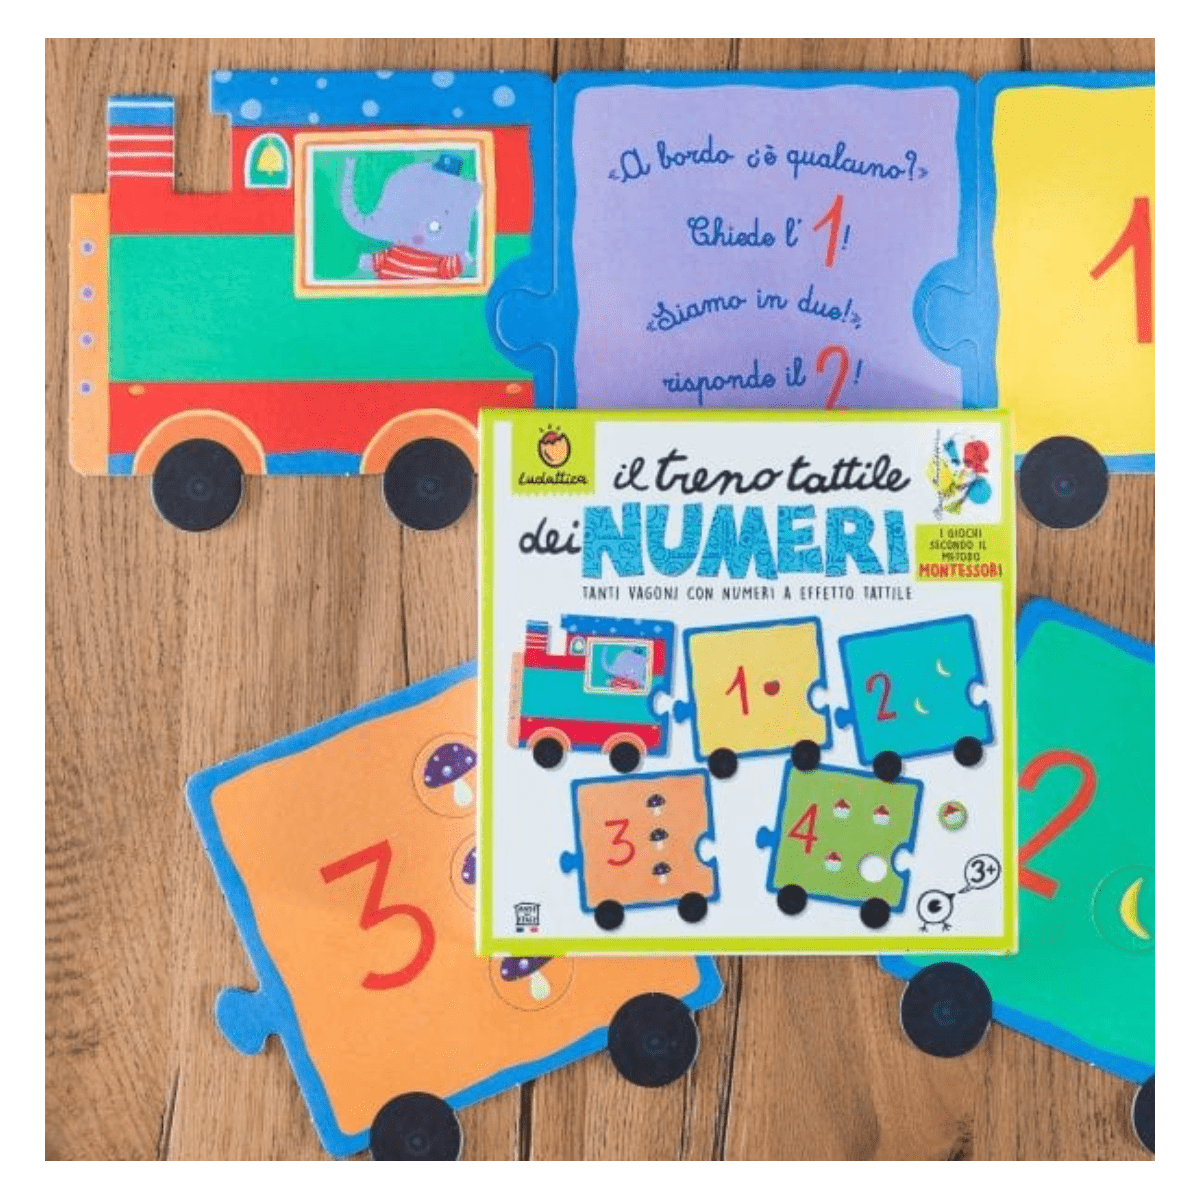 Il  Trenino Tattile dei Numeri | I numeri e la matematica secondo Maria Montessori